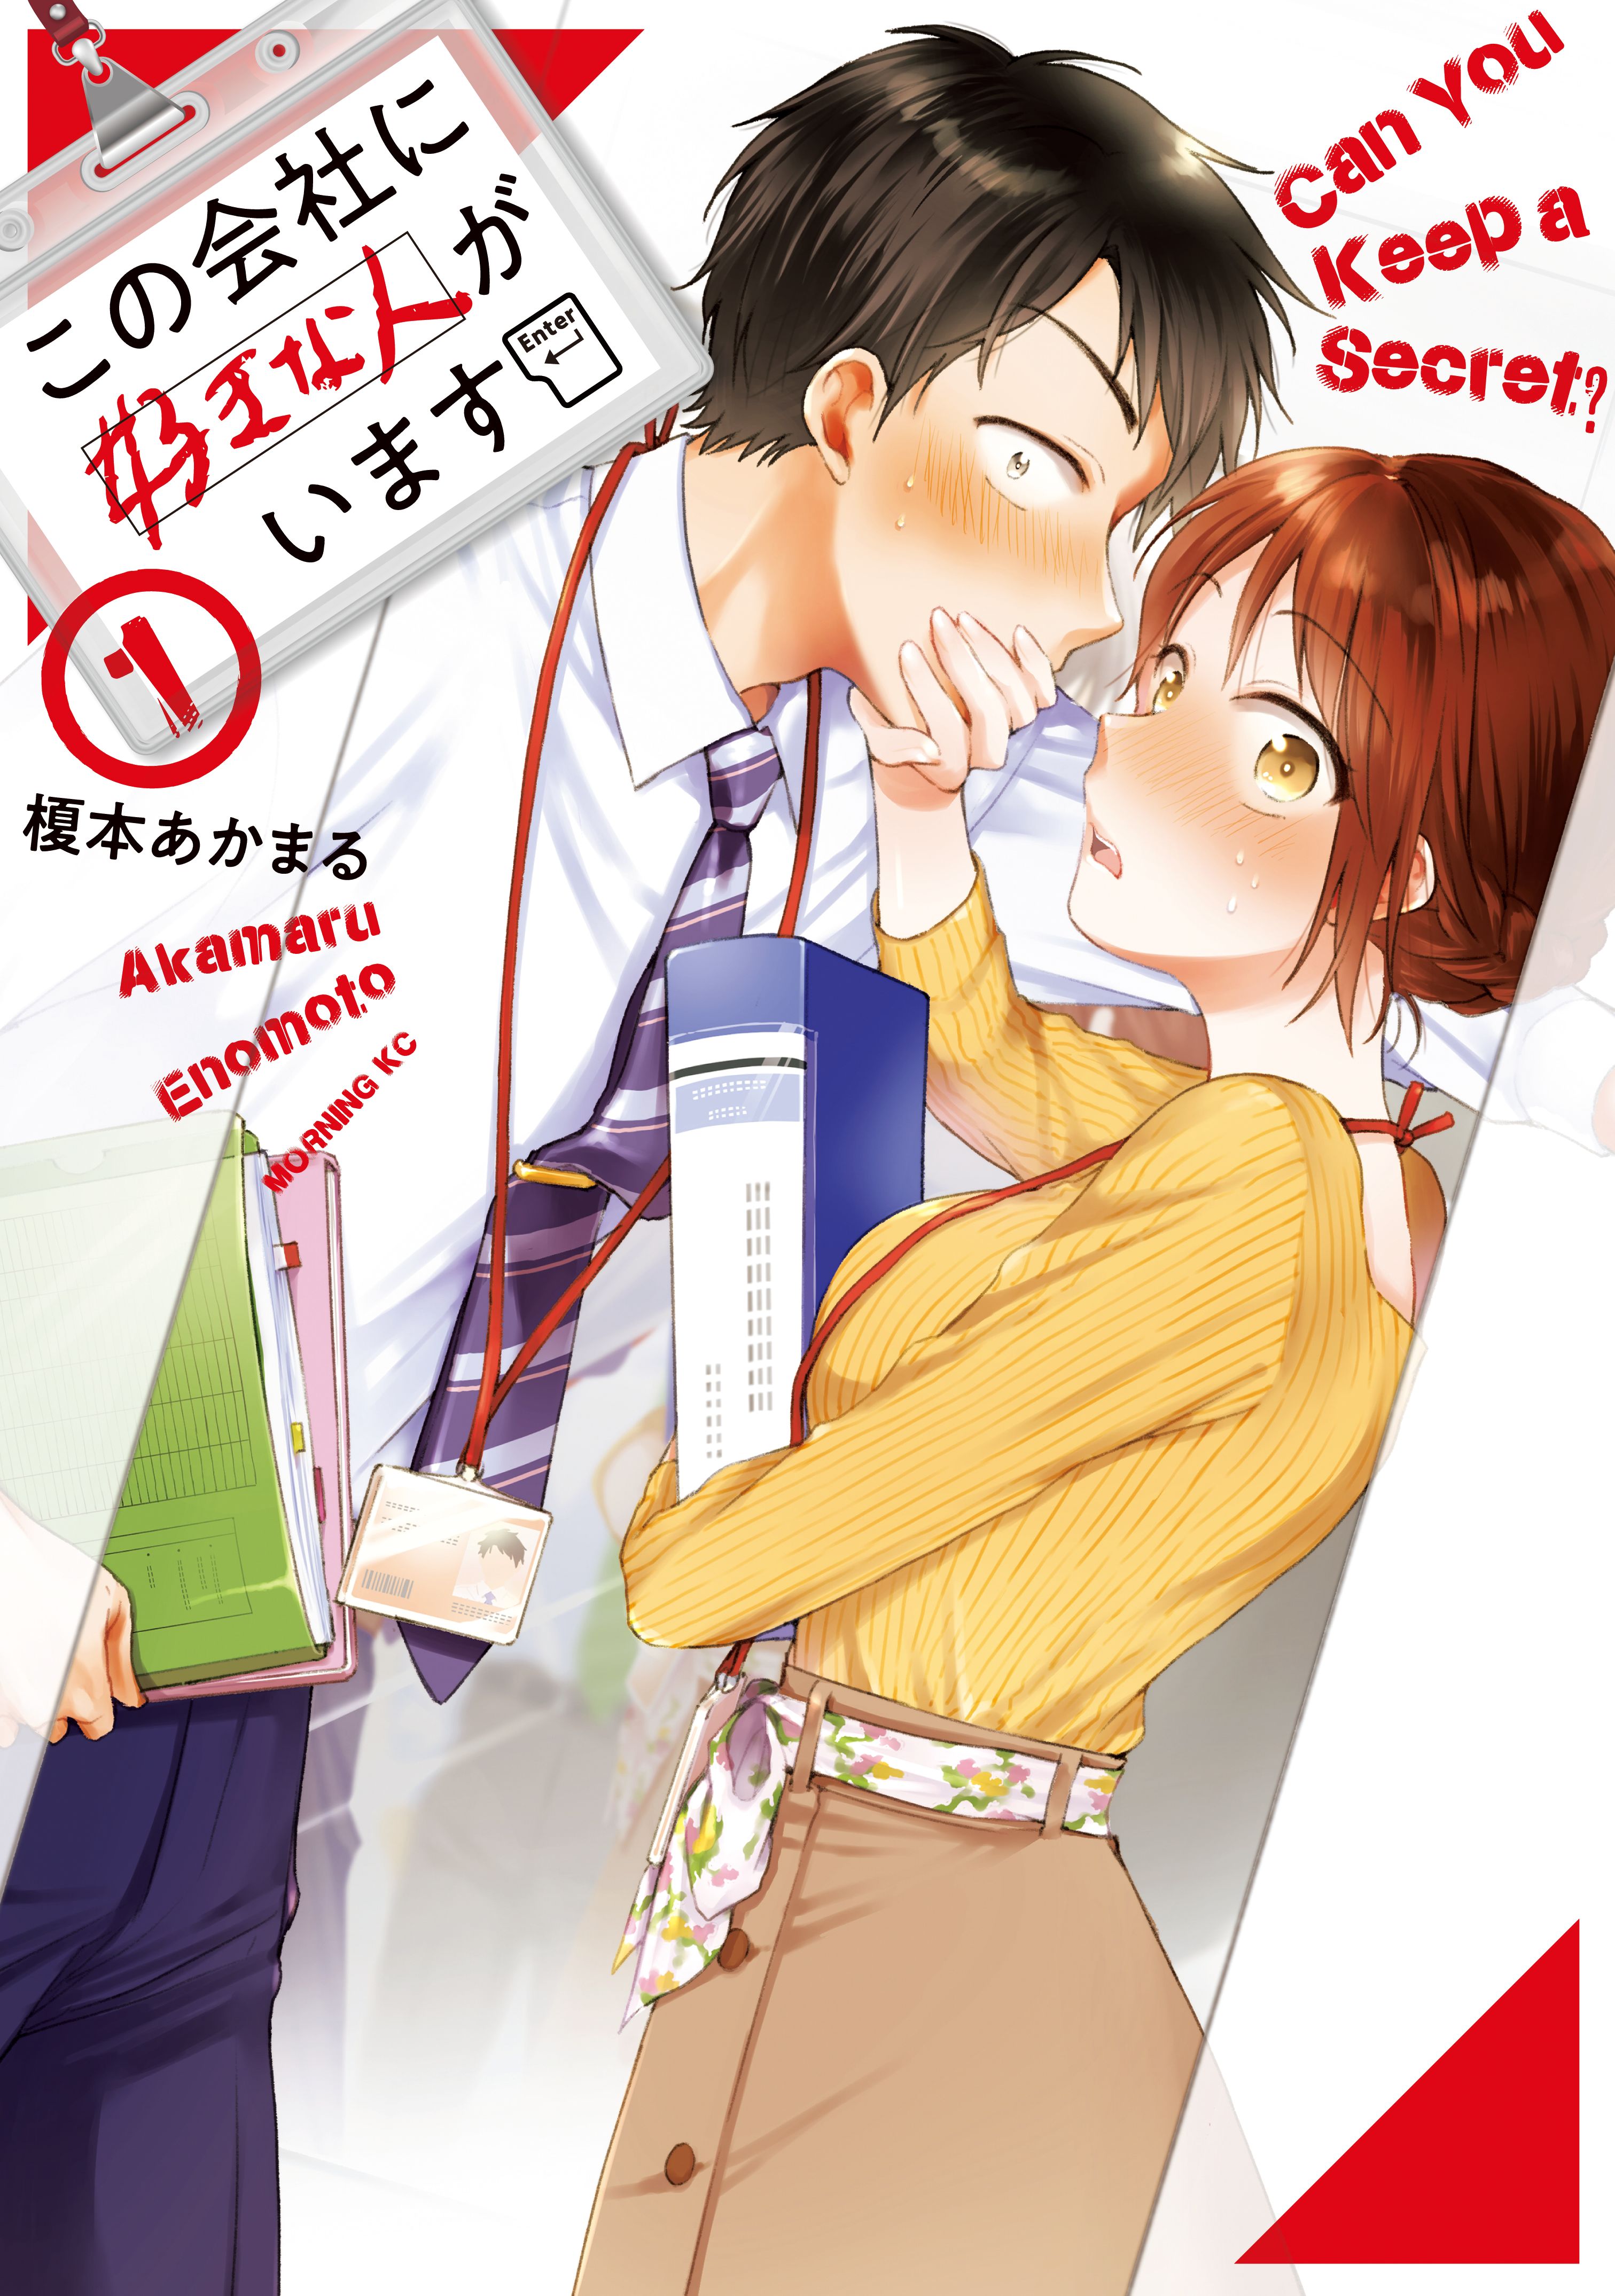 Read Sakamoto Desu Ga? Chapter 6 : Hide And Seek Of Love on Mangakakalot